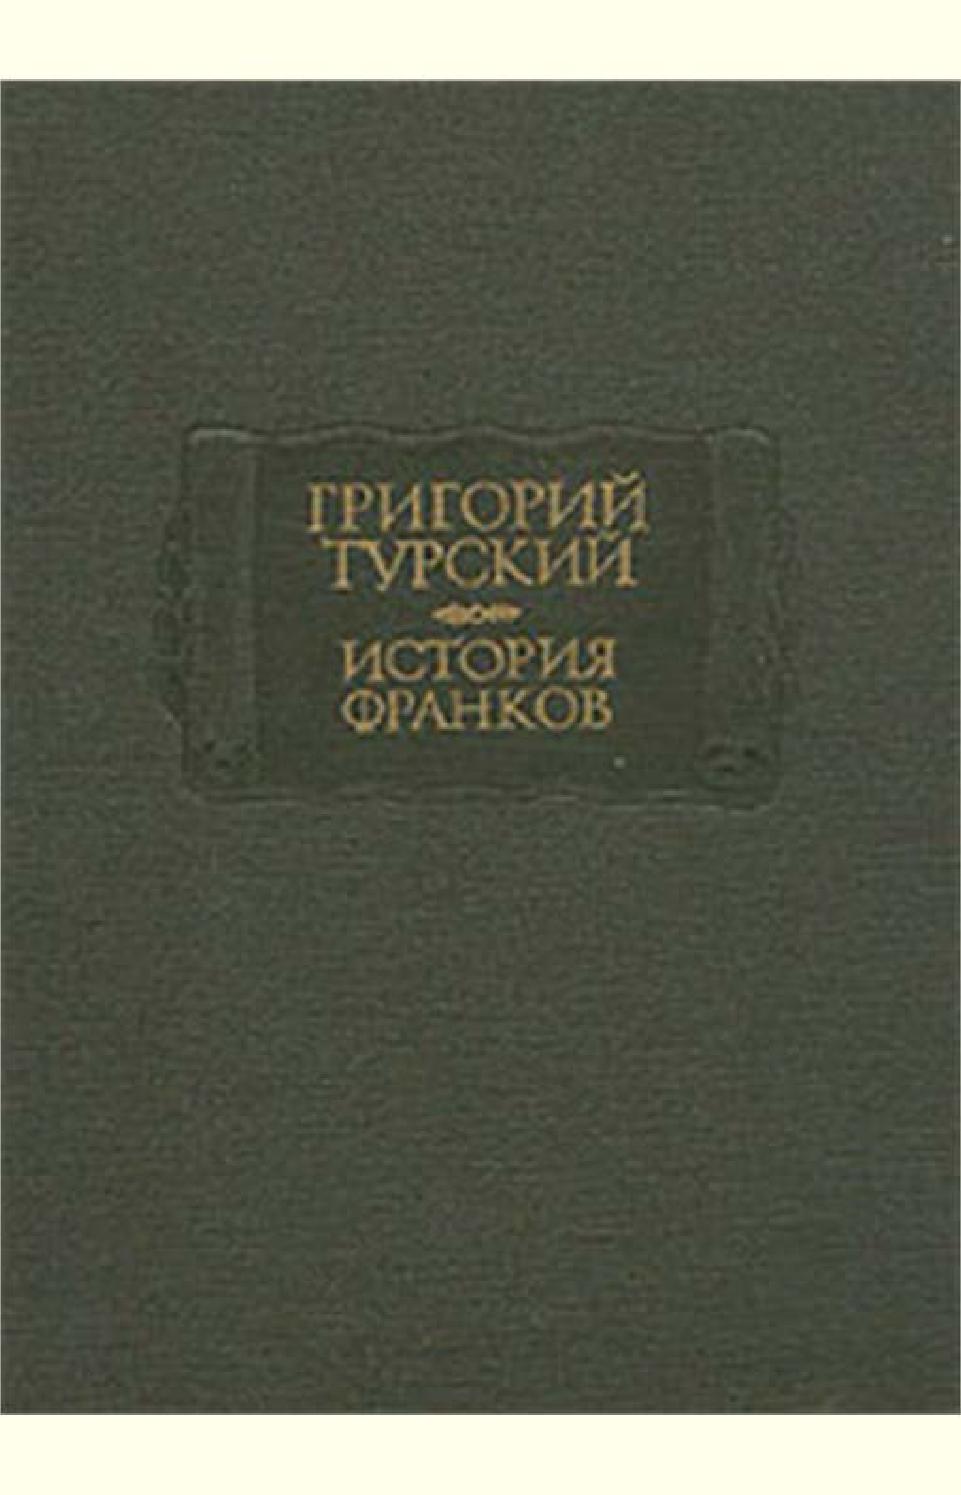 История Франков. Книги 6-10, Григорий Турский